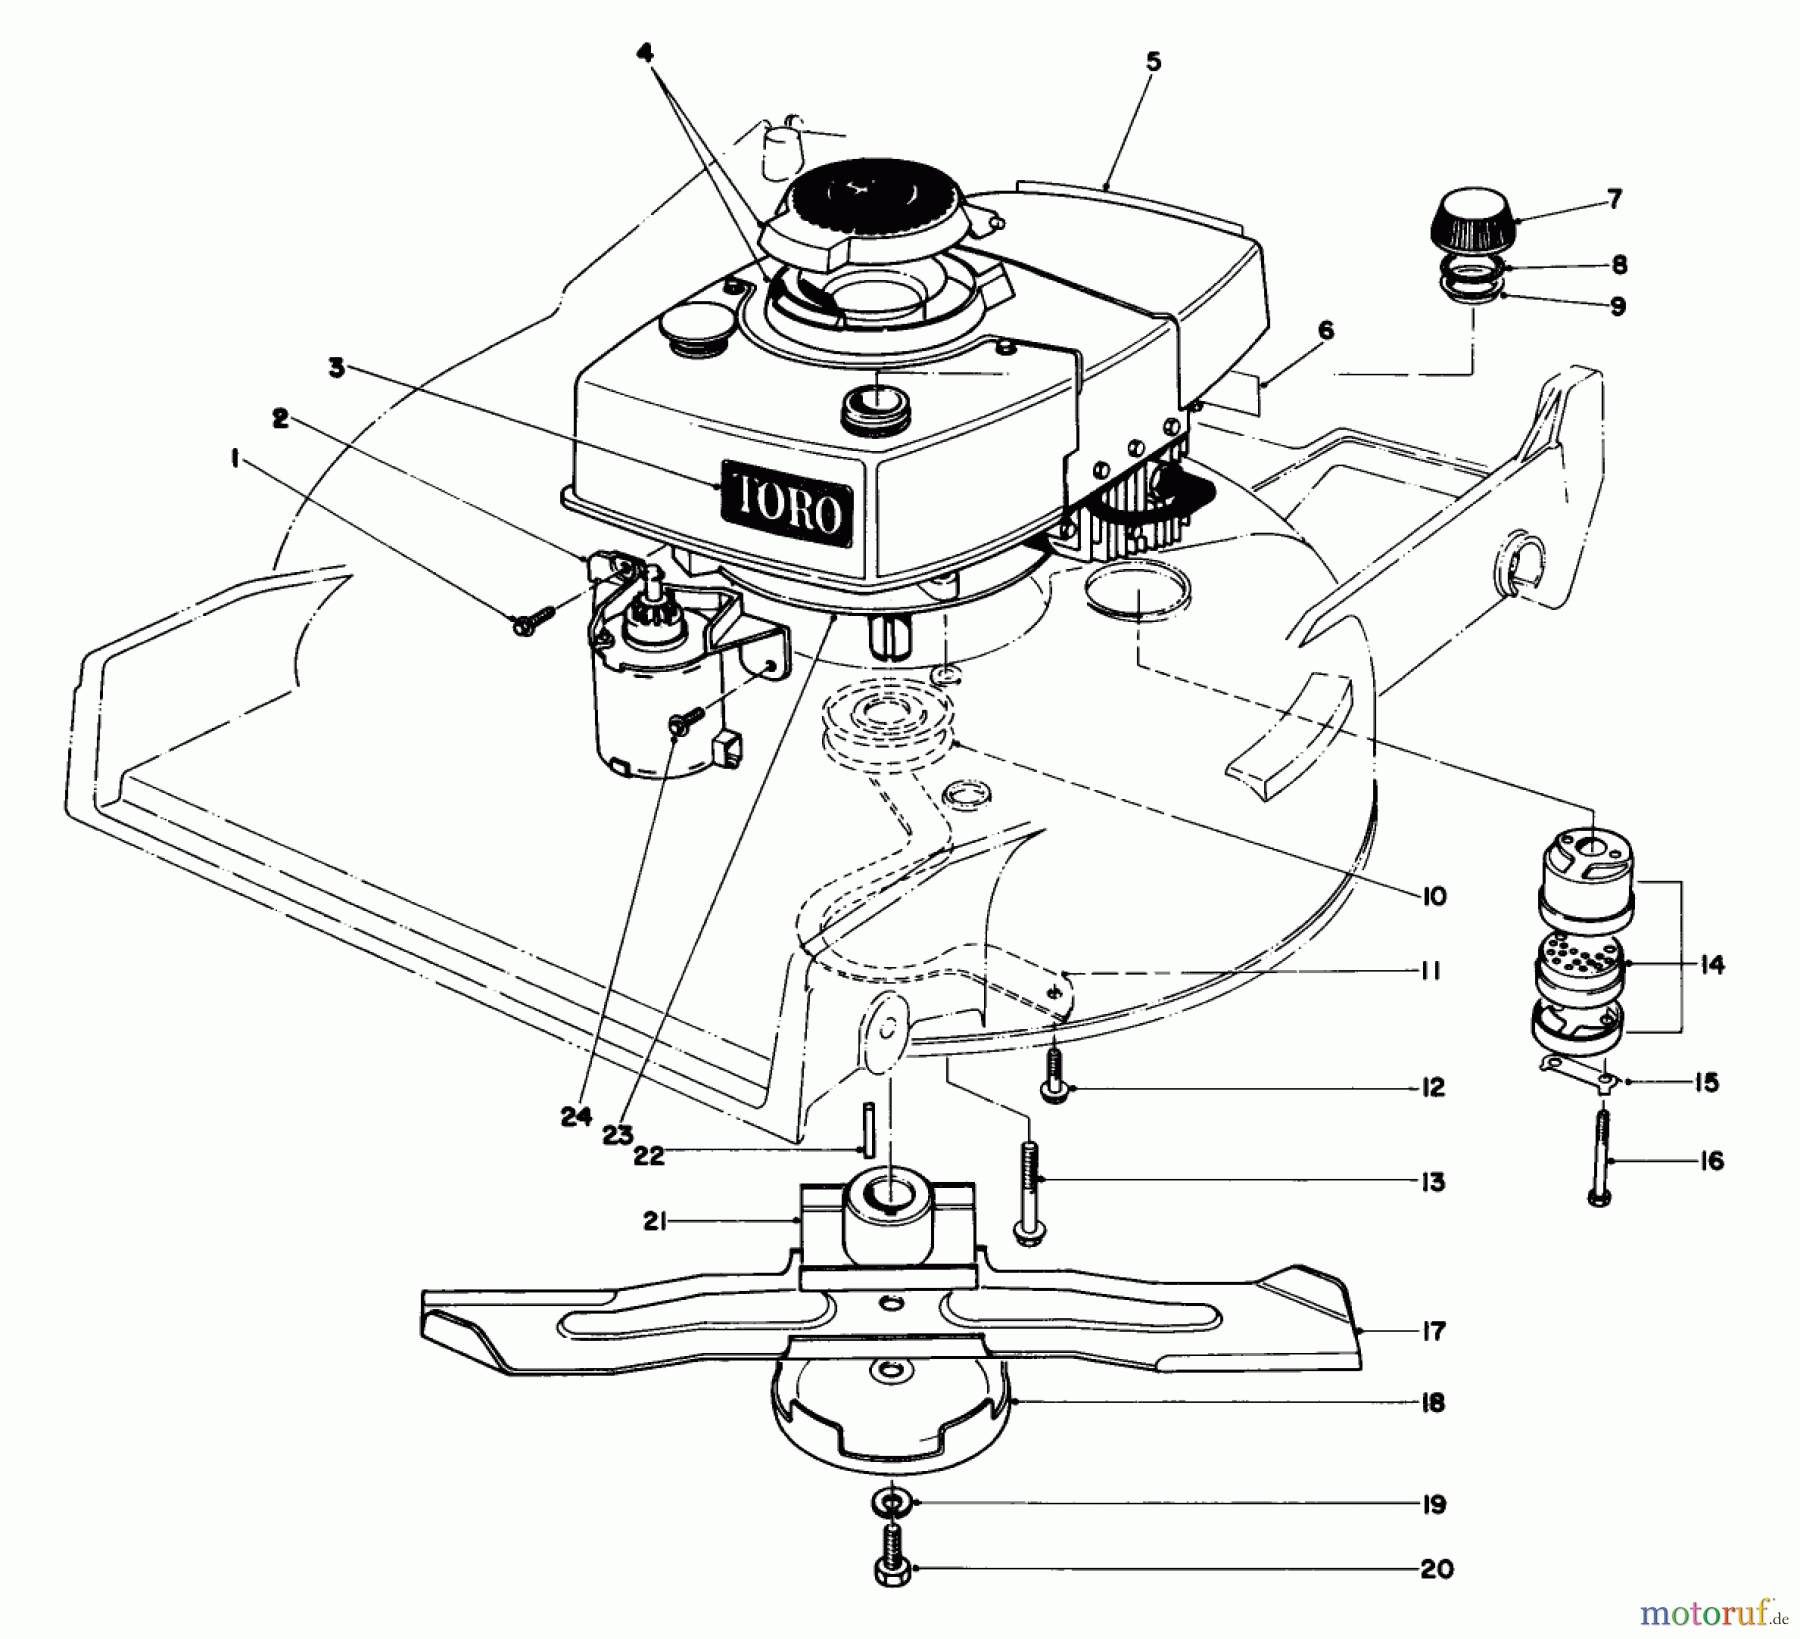  Toro Neu Mowers, Walk-Behind Seite 1 20715 - Toro Lawnmower, 1982 (2000001-2999999) ENGINE ASSEMBLY